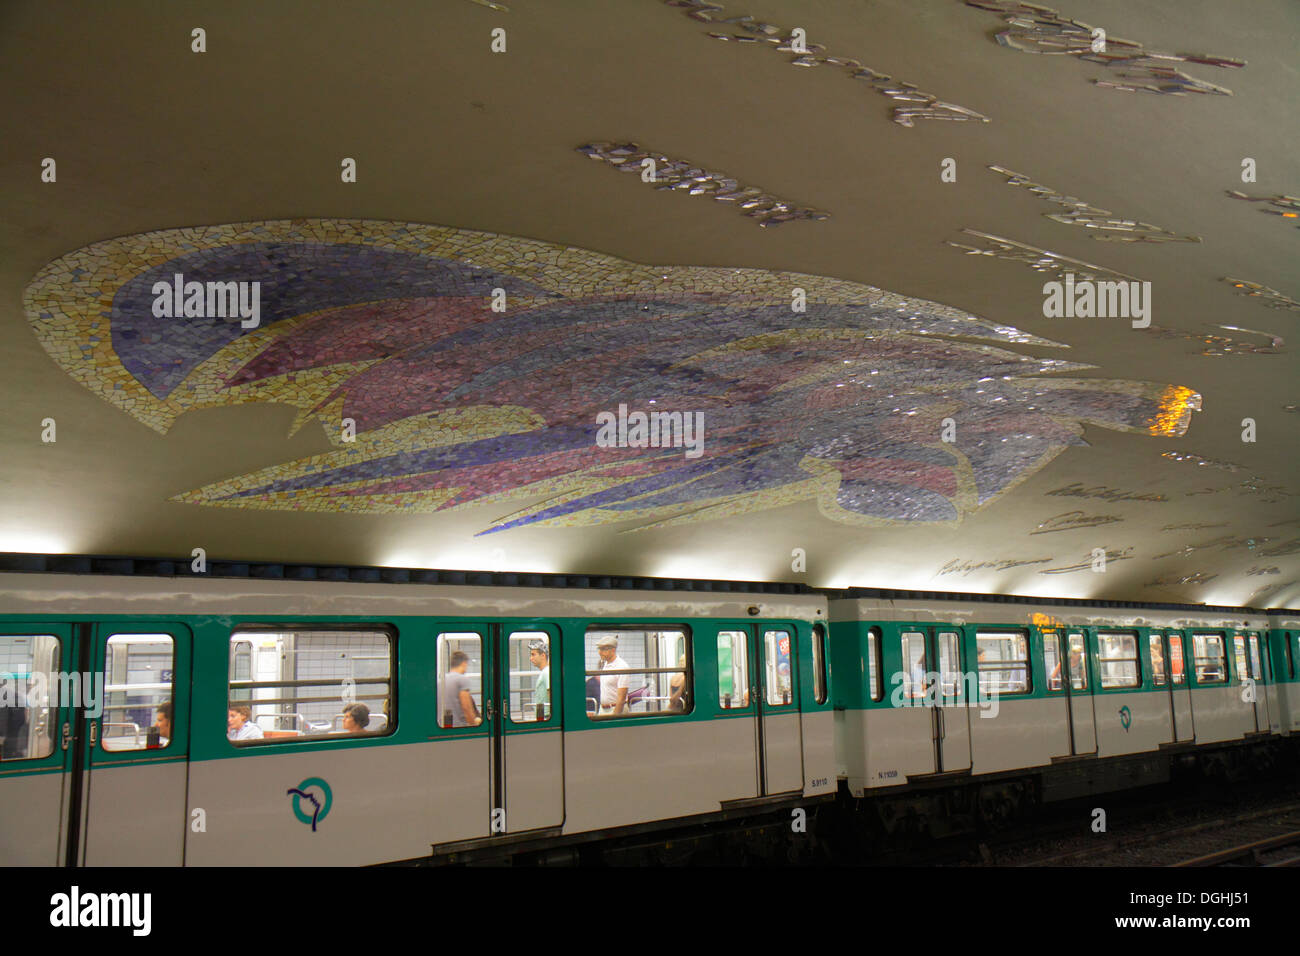 Paris France,5th arrondissement,Cluny La Sorbonne Station Line 10,subway,train,platform,vaulted ceiling,signatures,mosaic frieze art,train,France13082 Stock Photo